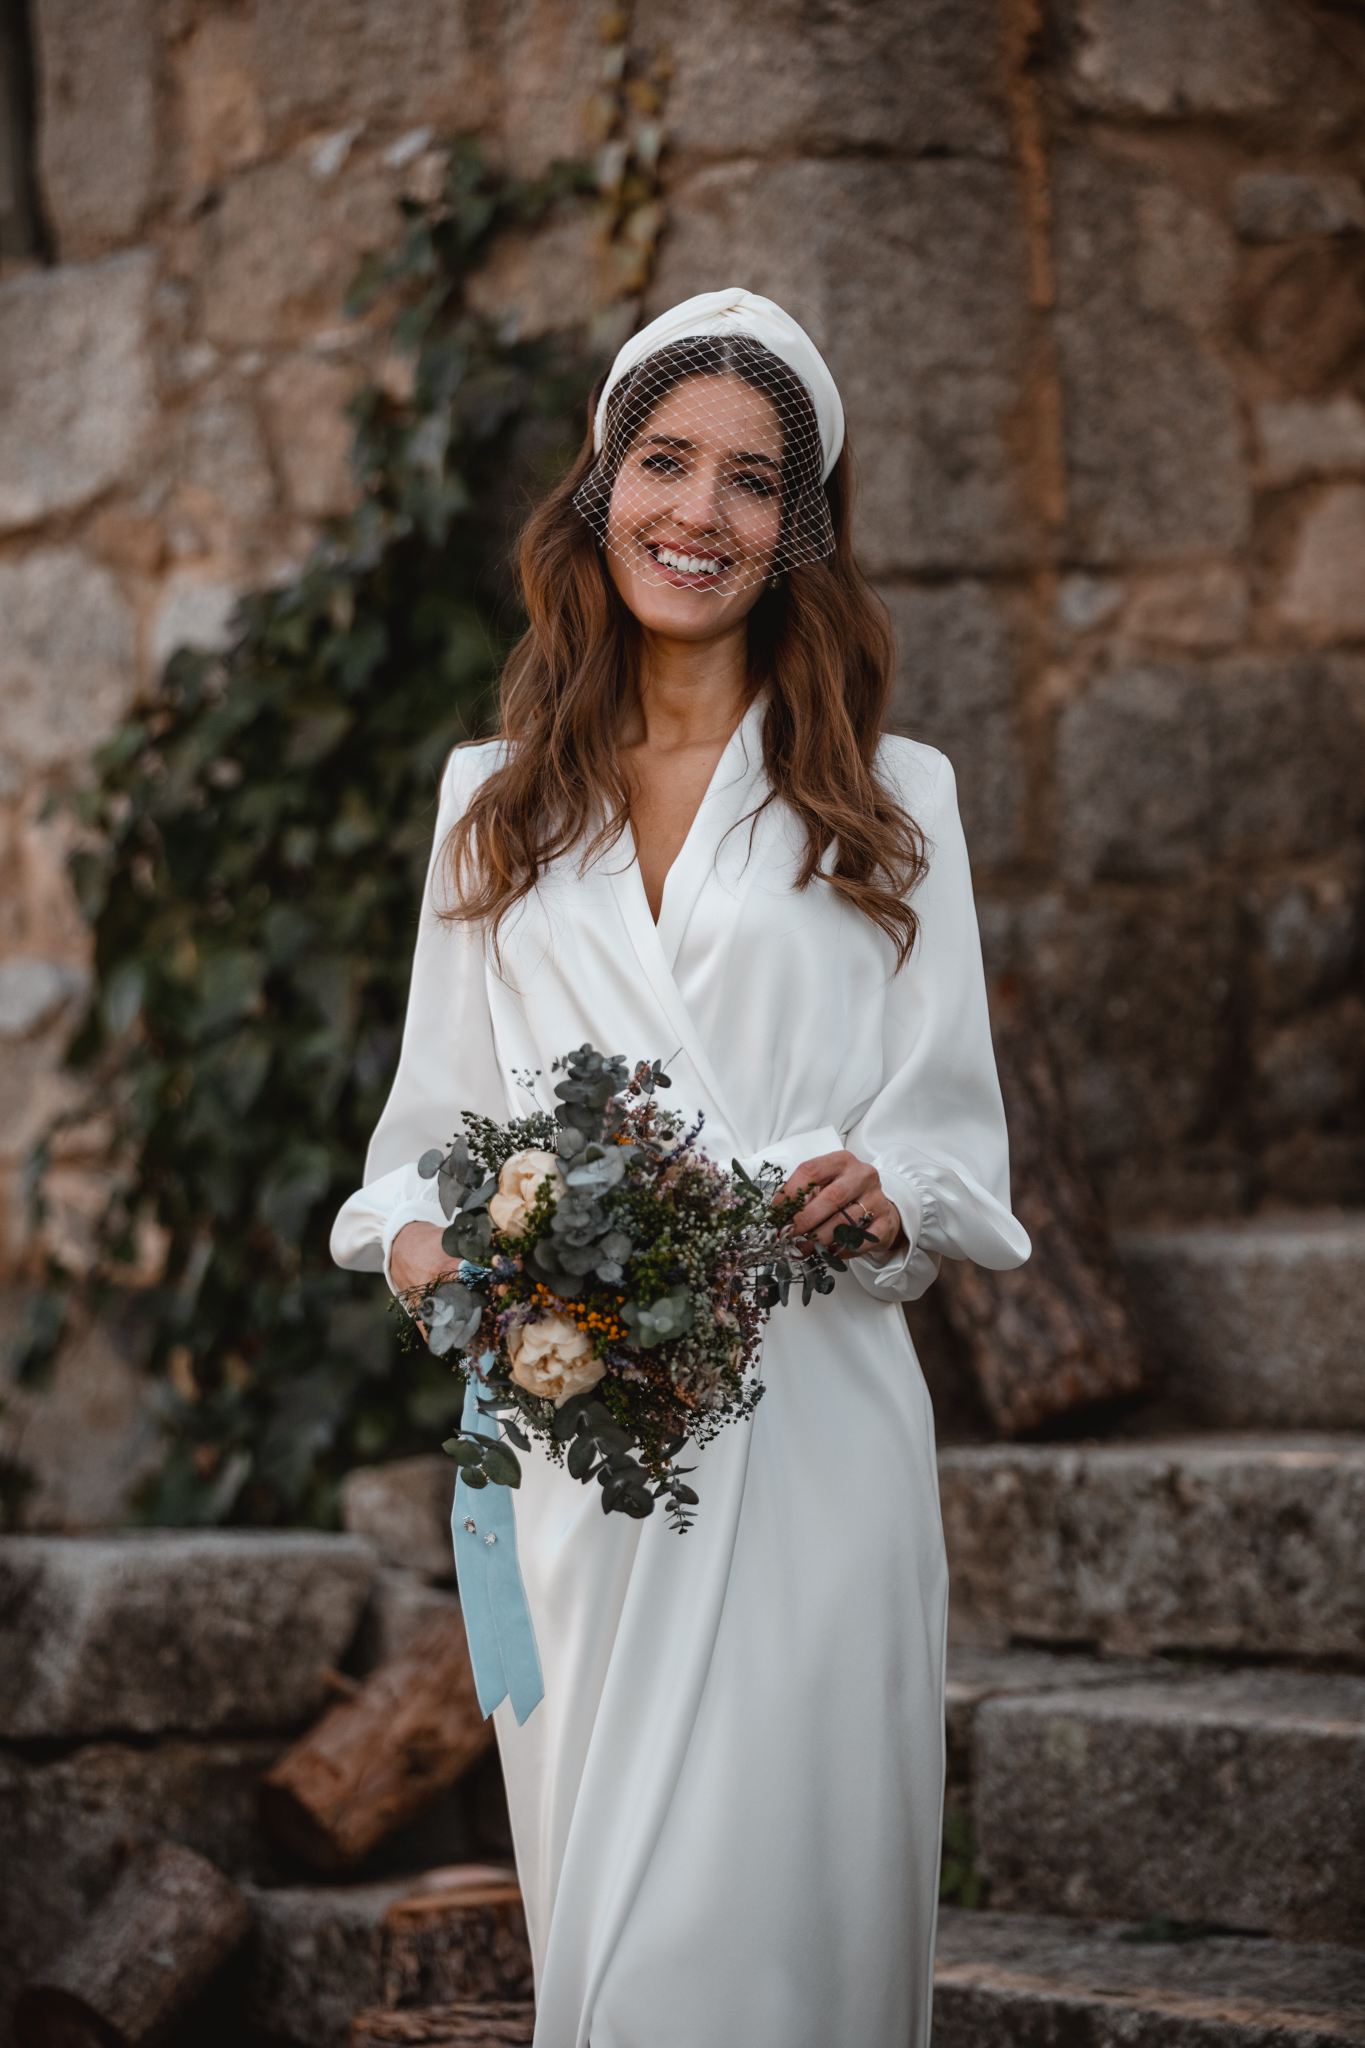 Propuesta Tradicional cubierta Vestido blanco midi para comunión, bautizo o boda civil